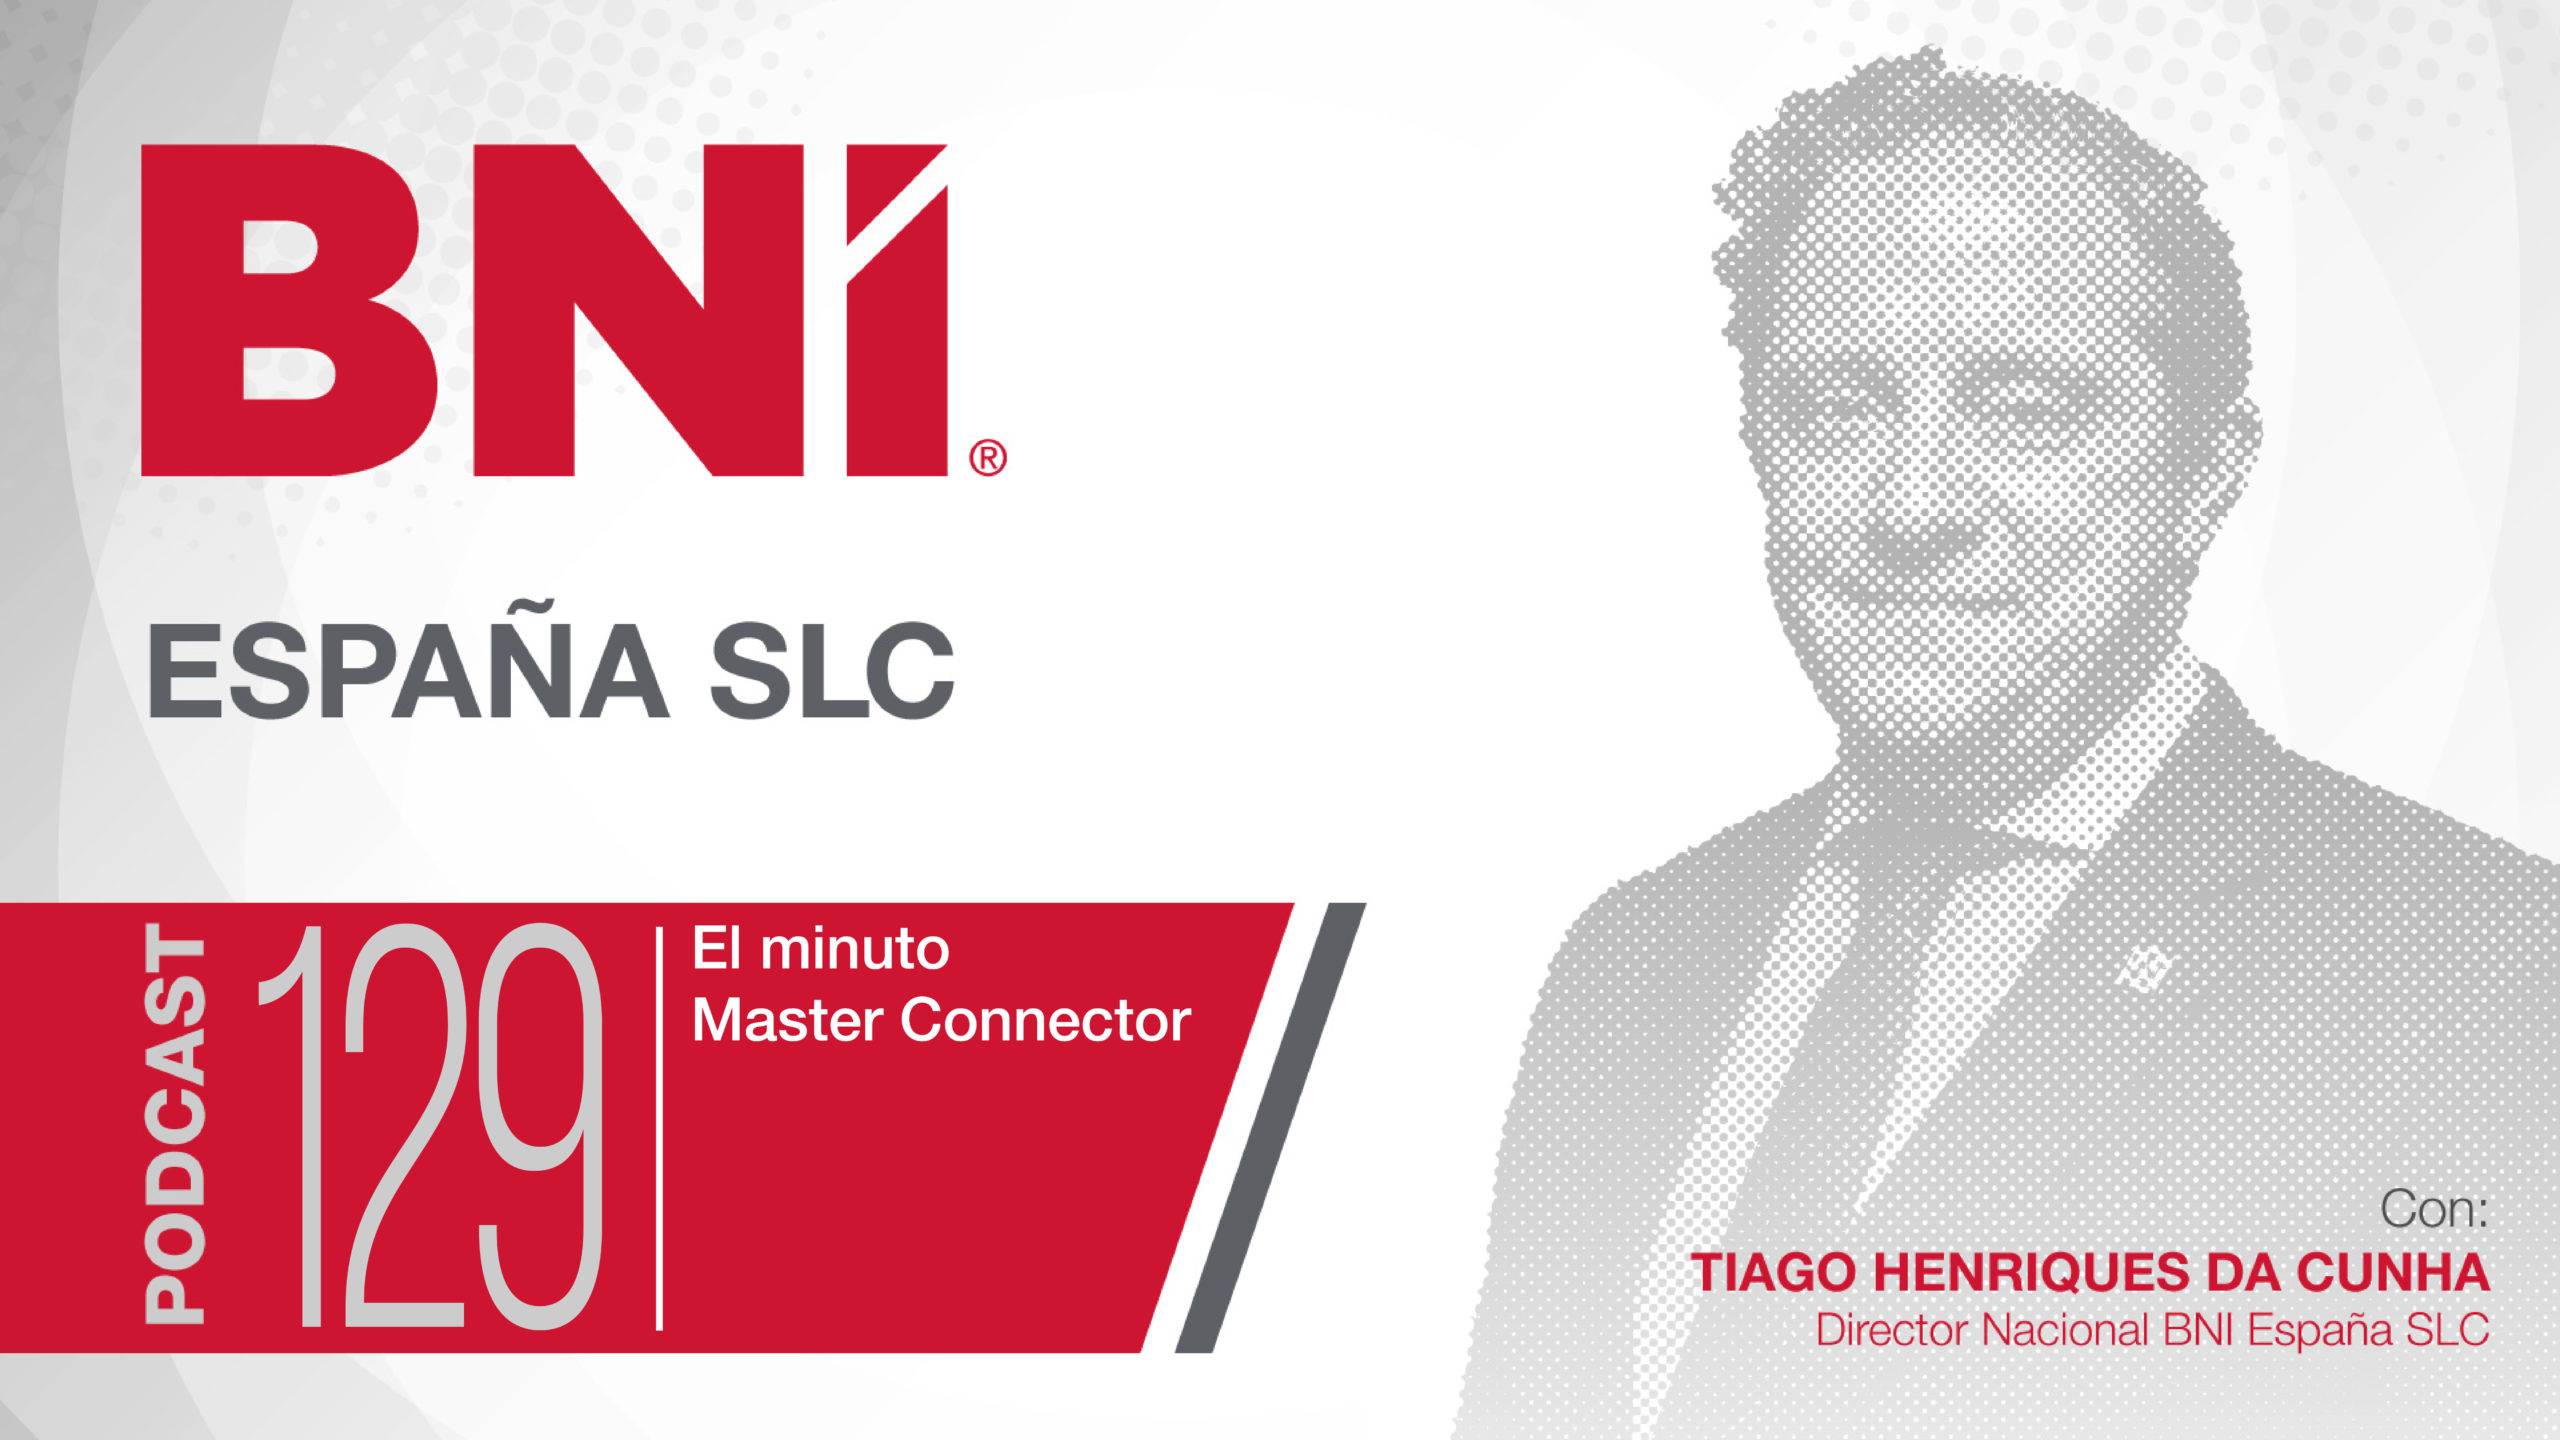 Tiago Henriques Da Cunha Director Nacional BNI España - Podcast 129